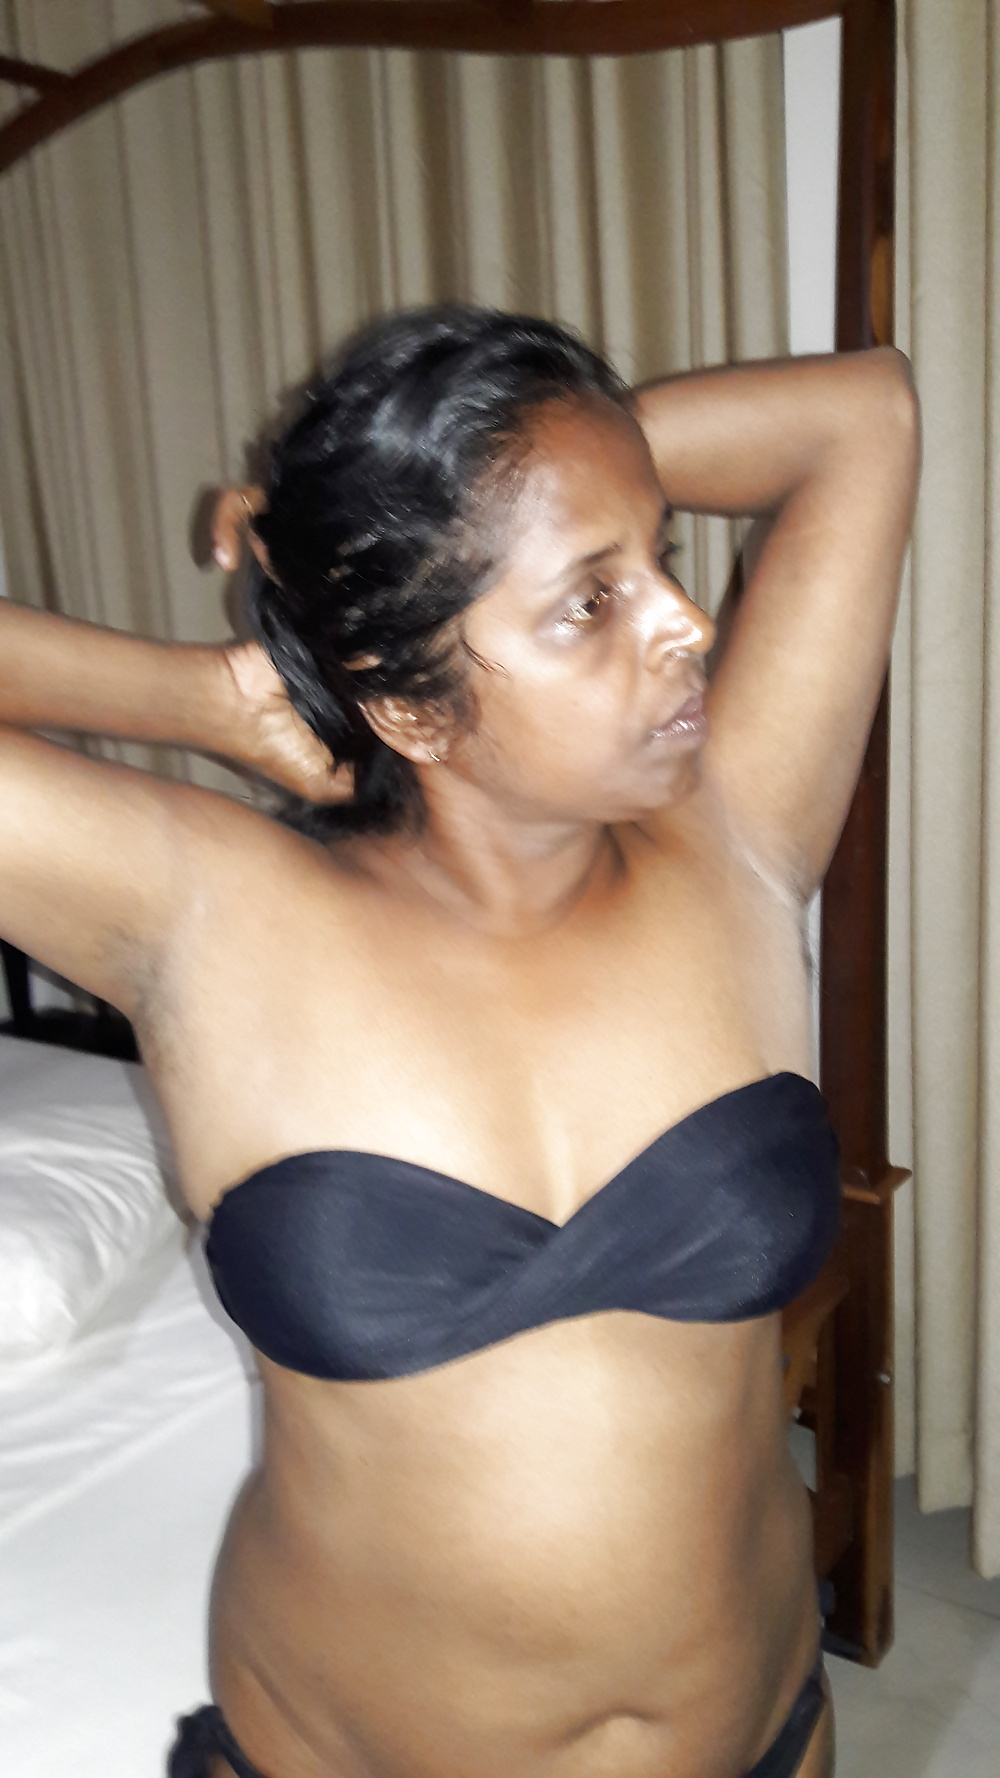 tamil wife nude selfie porn gallerie